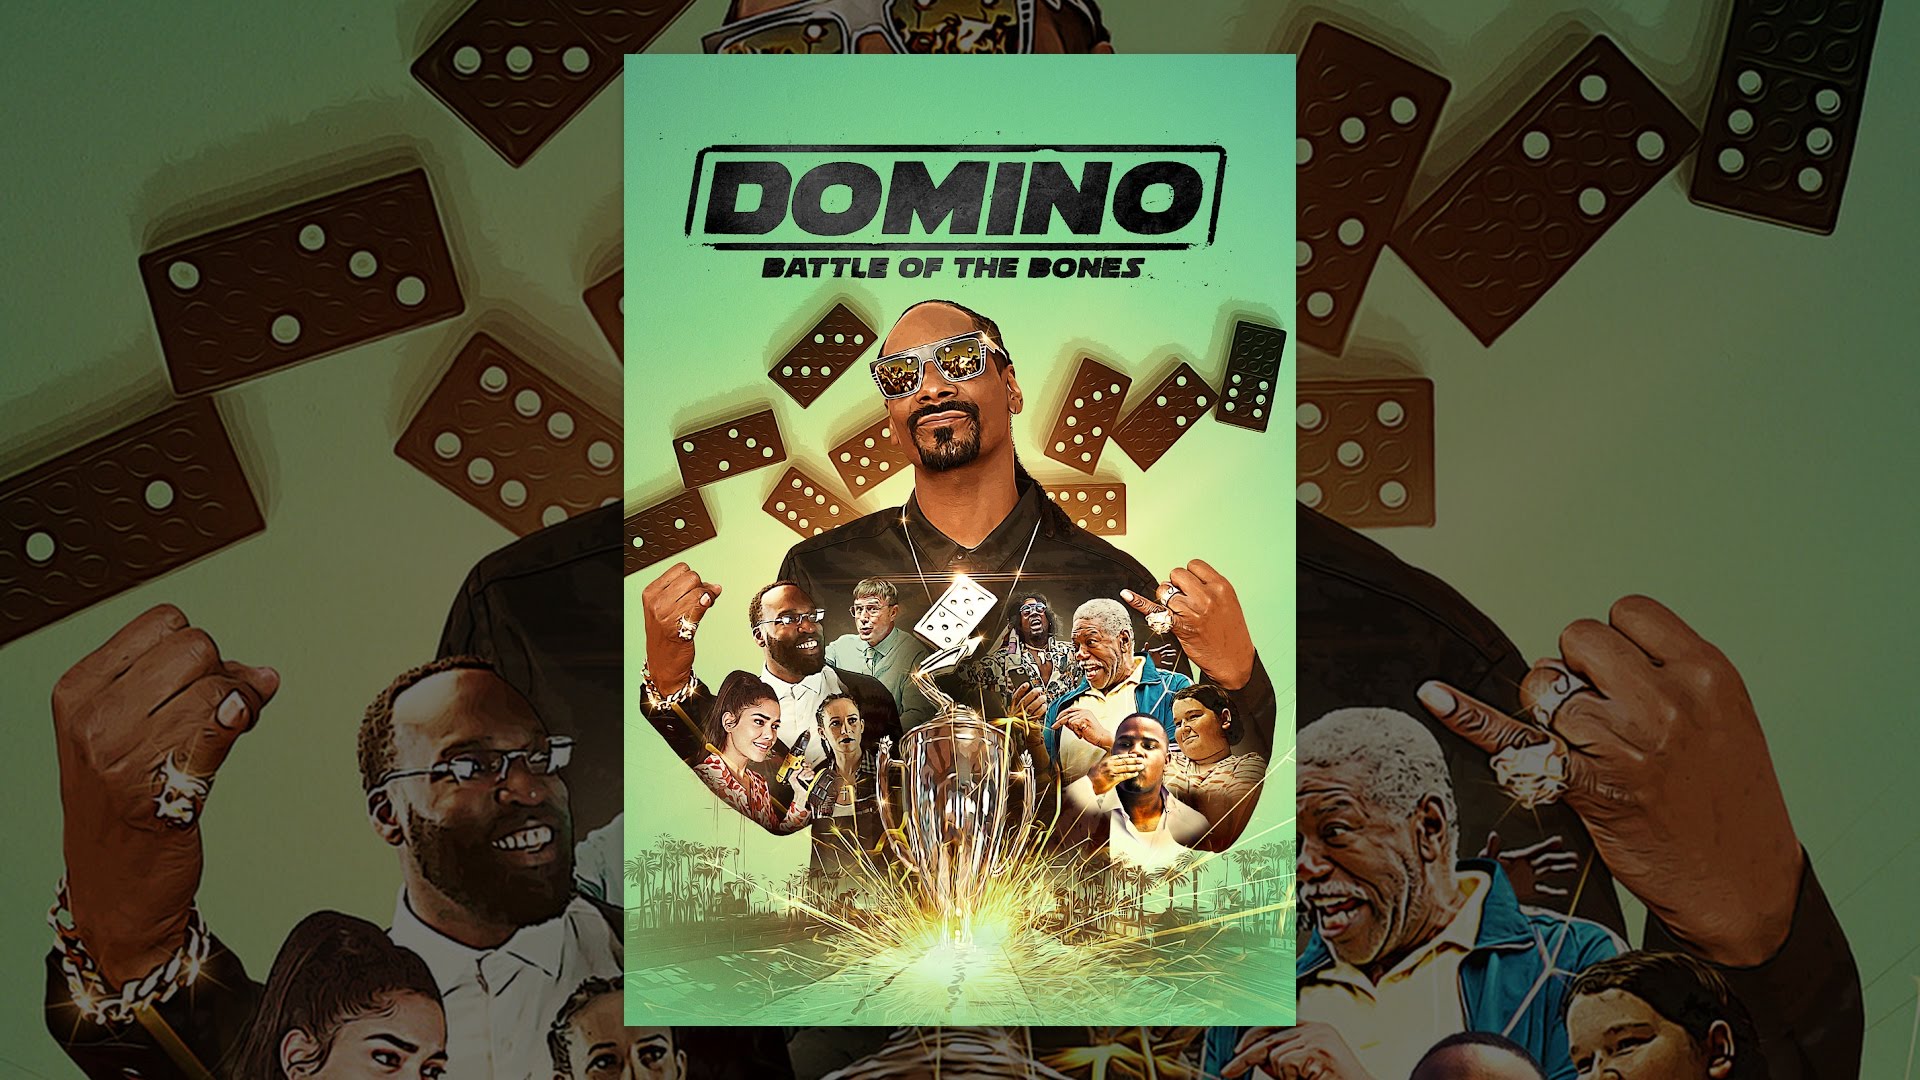 Domino Battle - Jogo Gratuito Online